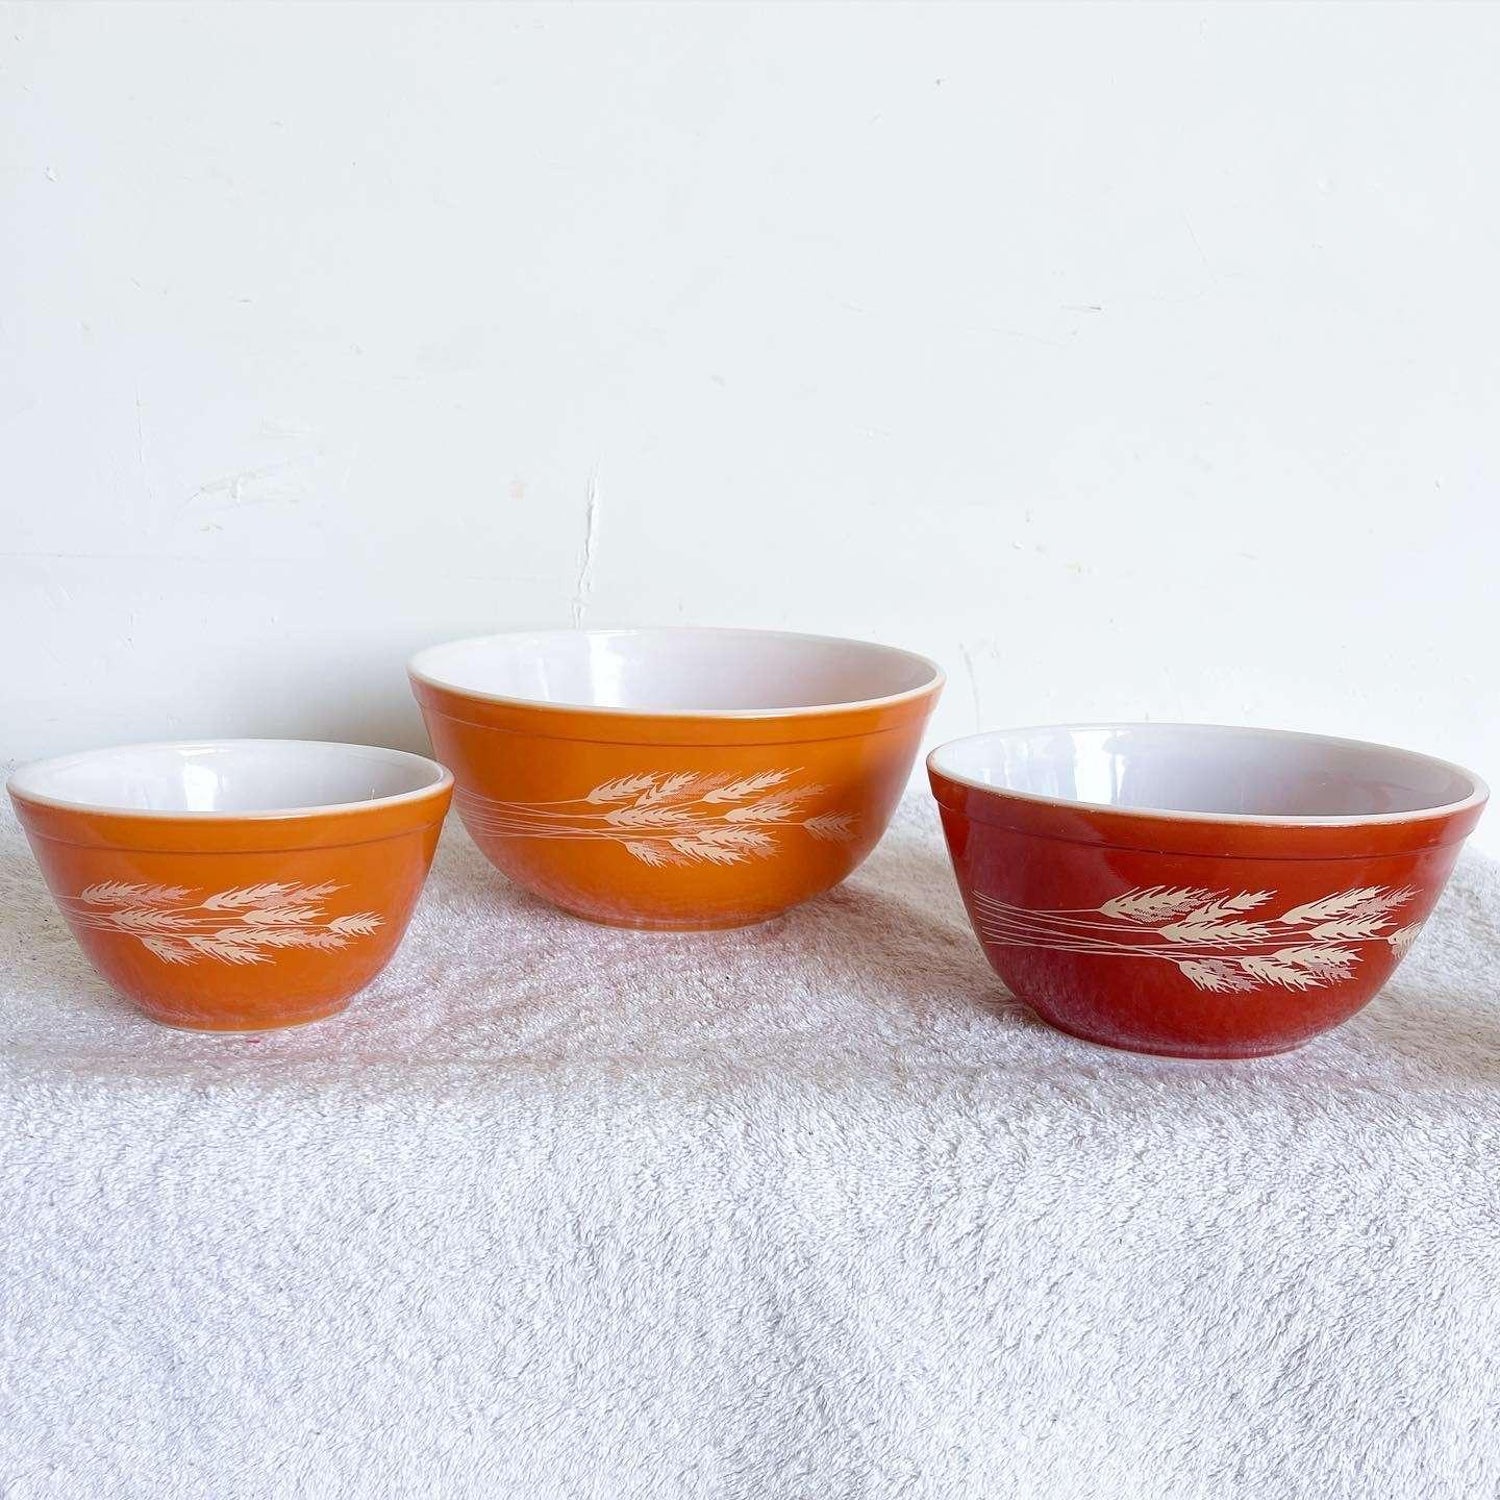 https://a.1stdibscdn.com/vintage-autumn-harvest-bowls-by-pyrex-set-of-3-for-sale/22569652/f_356022821691474327728/1_master.jpg?width=1500